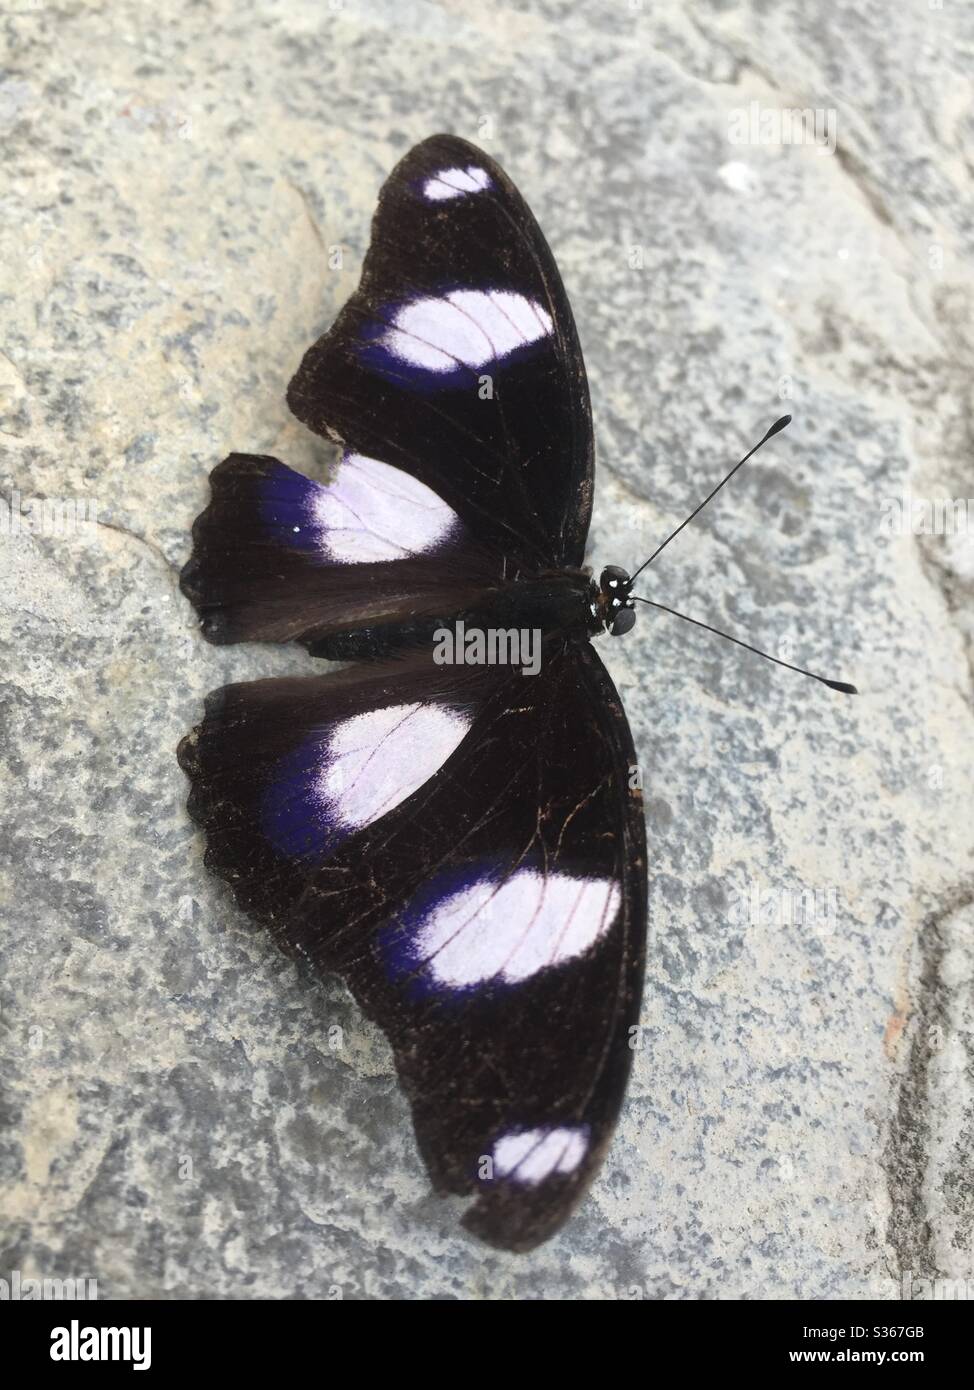 Una cattura di una farfalla che riposa dopo una passeggiata attraverso i venti, mostrando i suoi modelli unici. Foto Stock